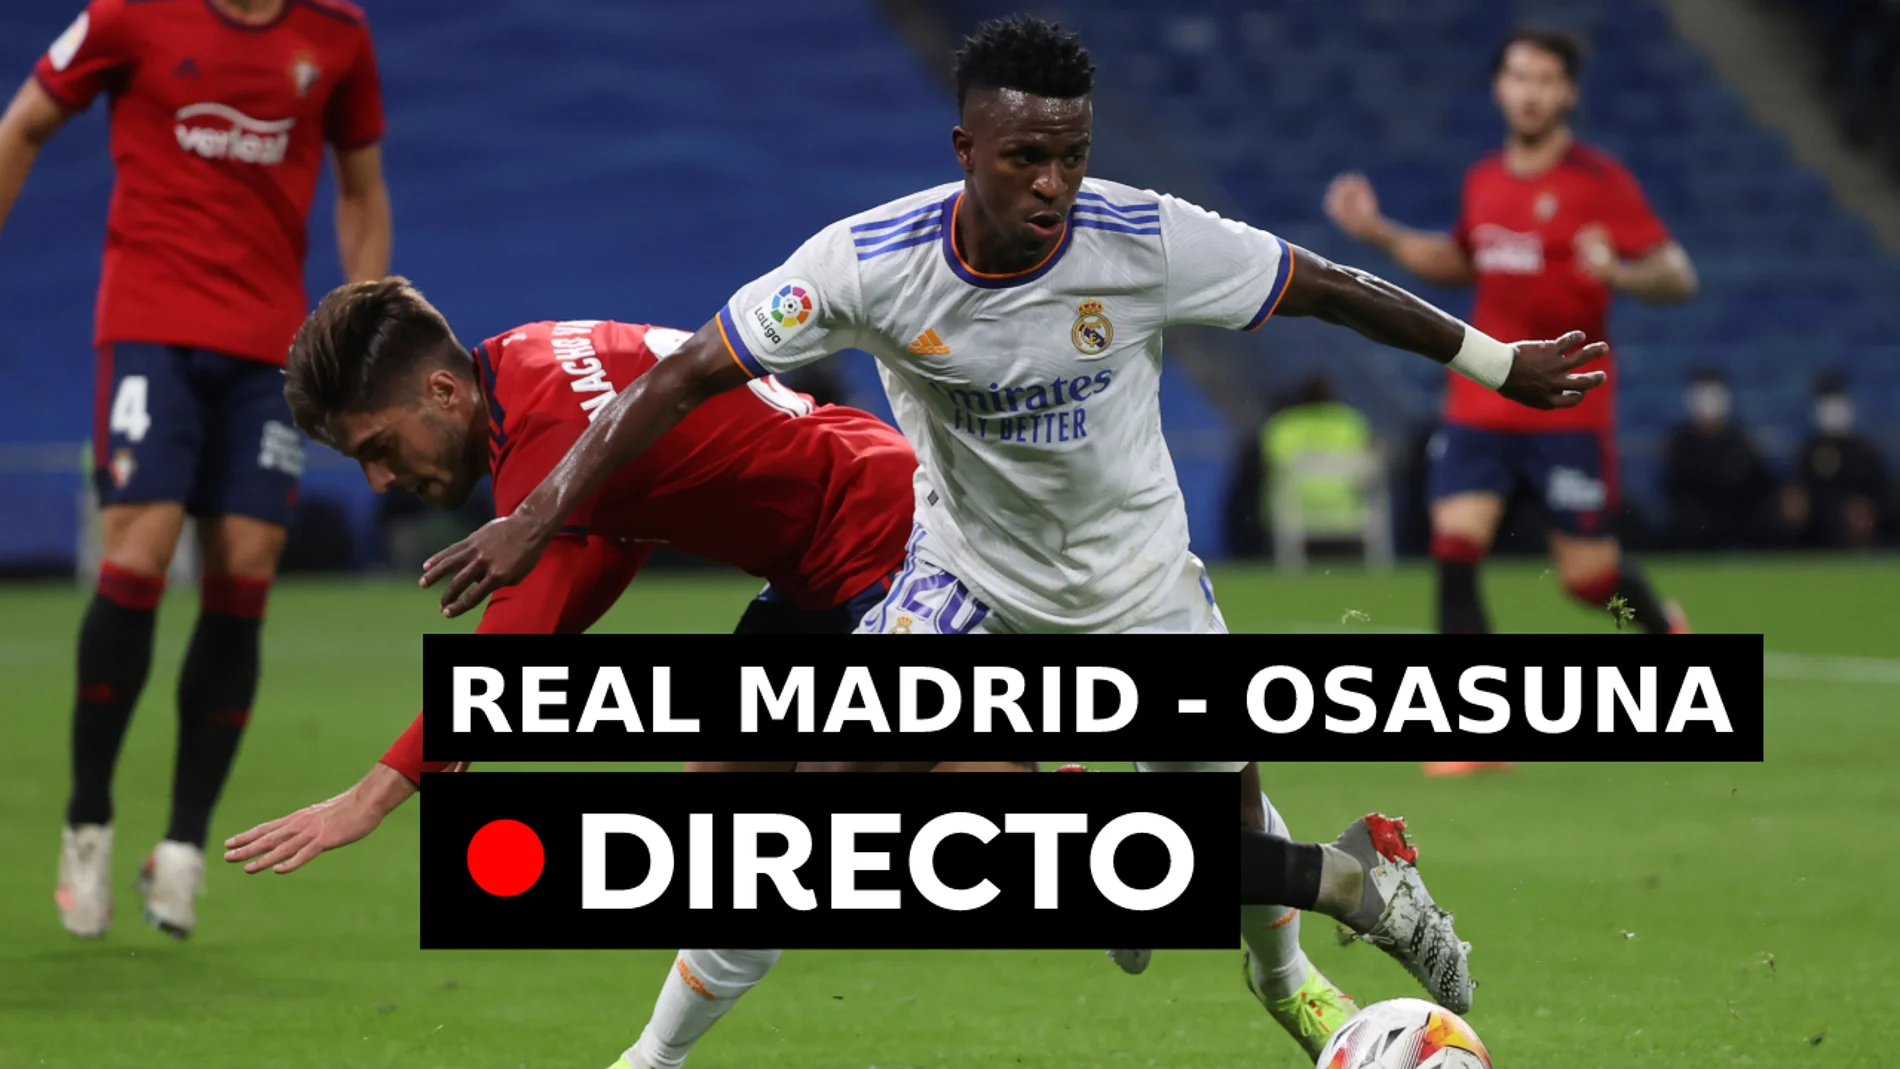 Real Madrid - Resultado, resumen de la Liga, directo (0-0)